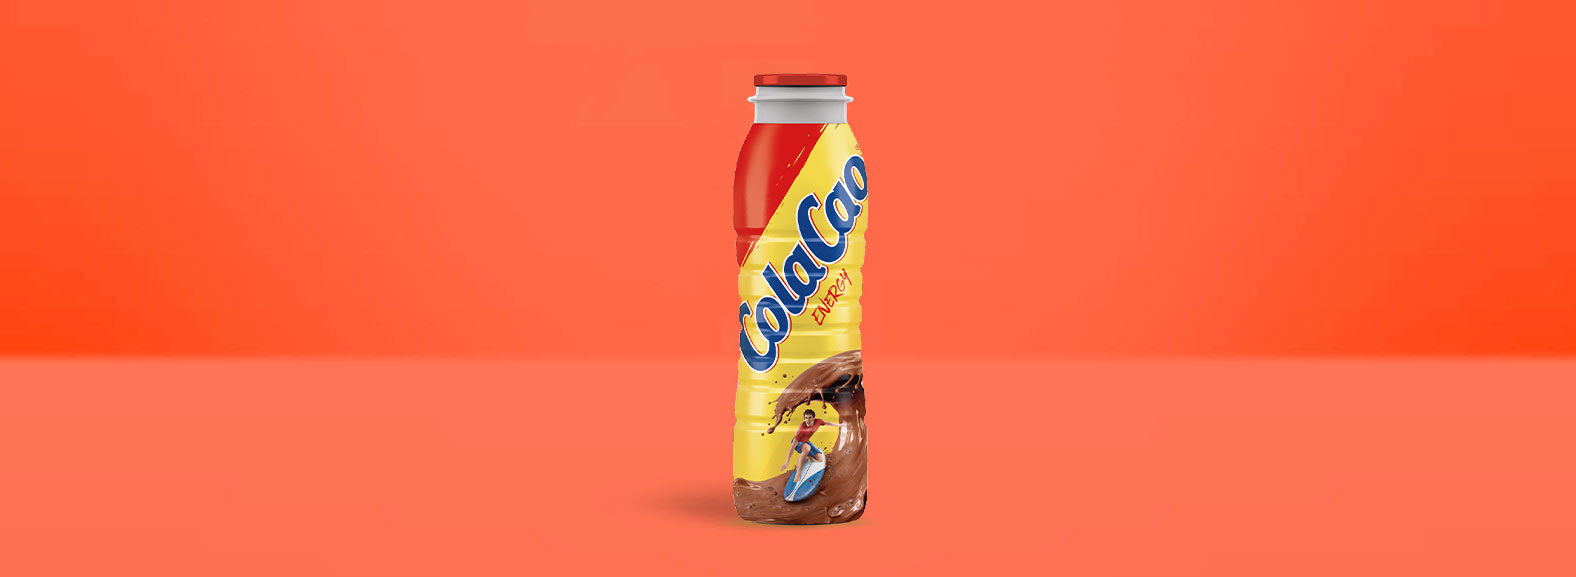 ColaCao energy